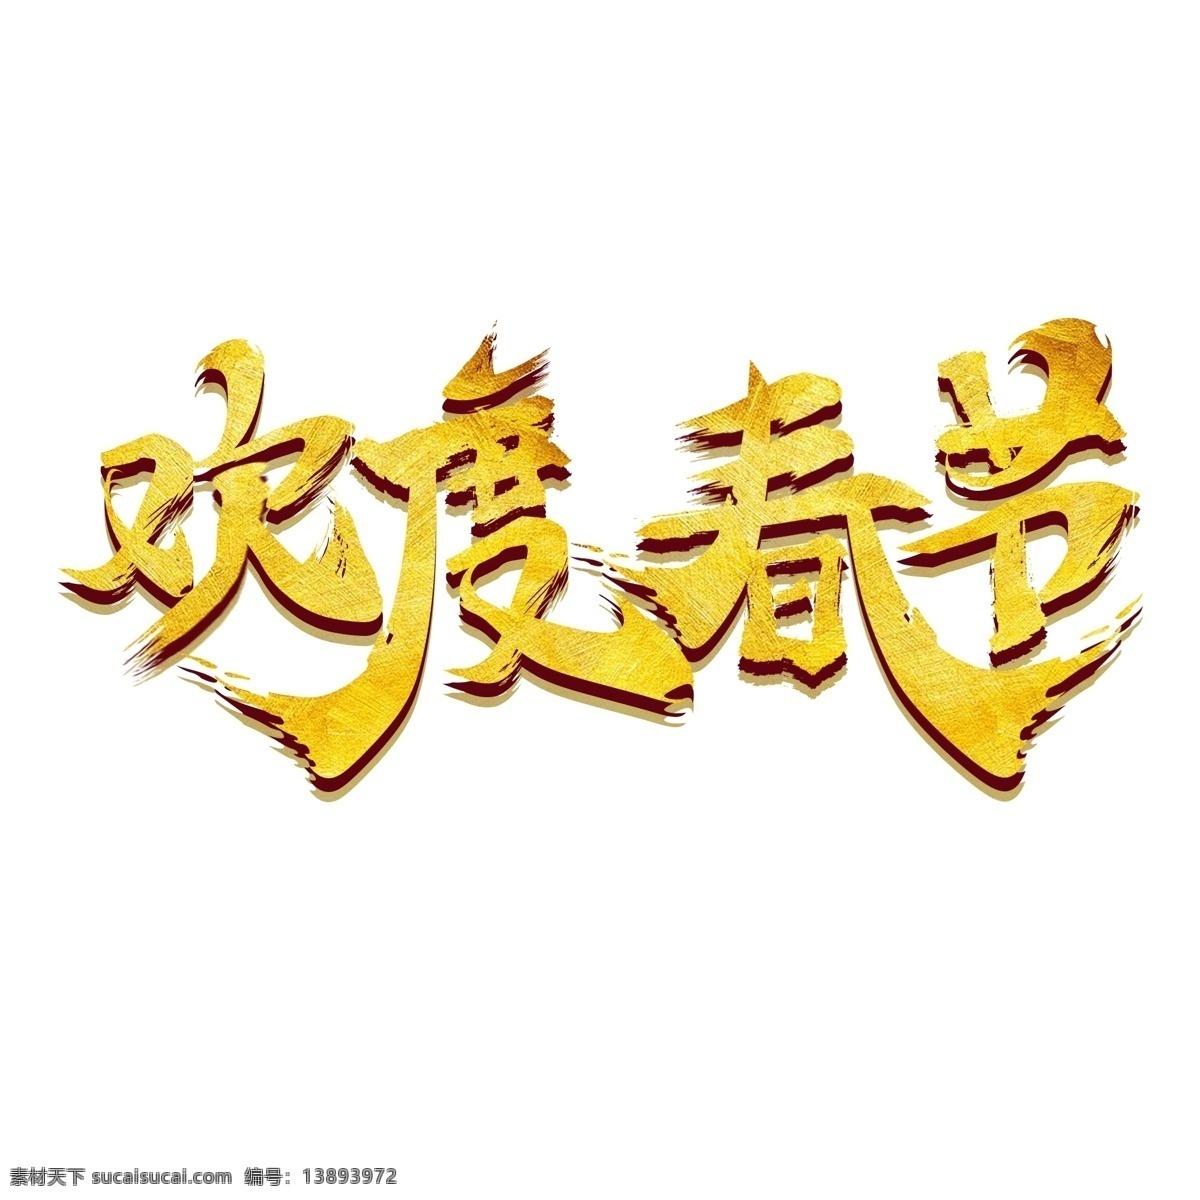 毛笔字 欢度 春节 字体 欢度春节 祝福语 艺术 字